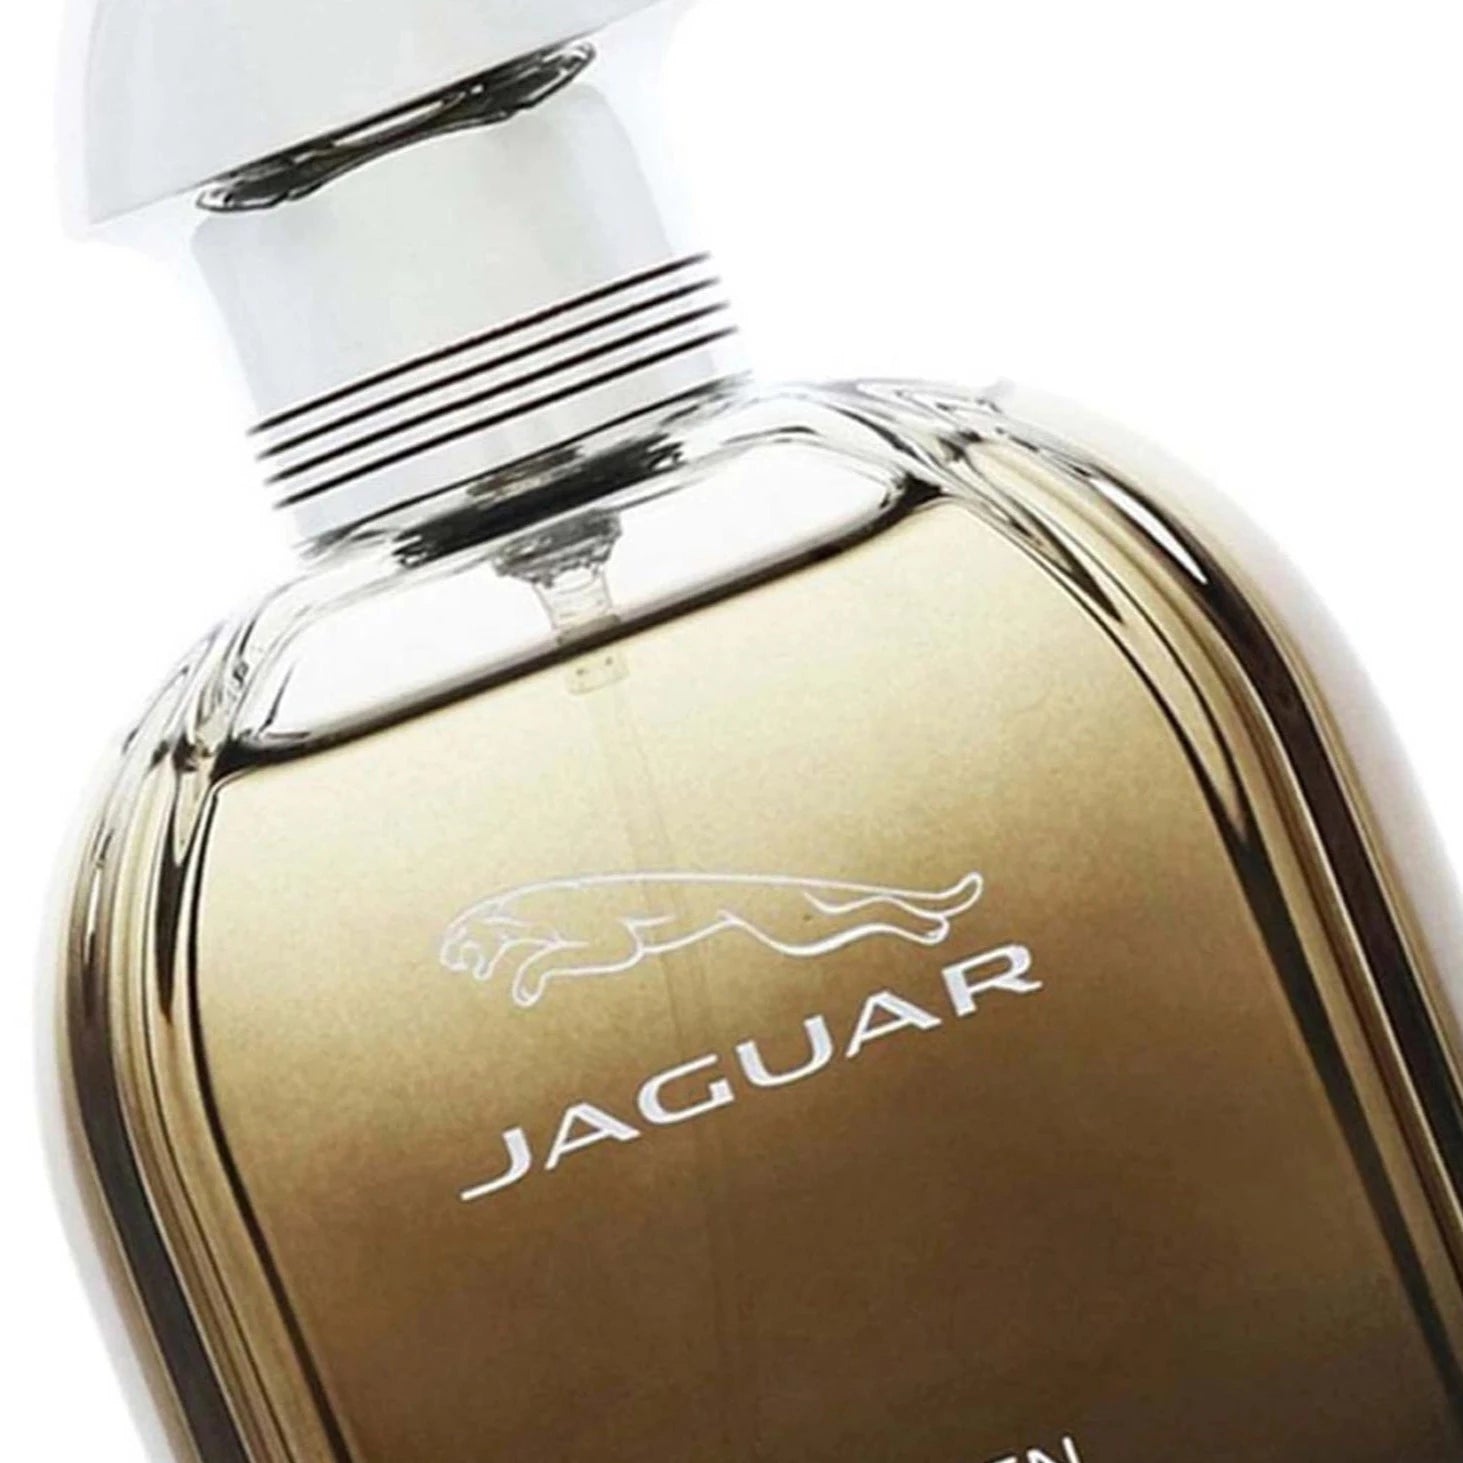 Jaguar Prive EDT | My Perfume Shop Australia